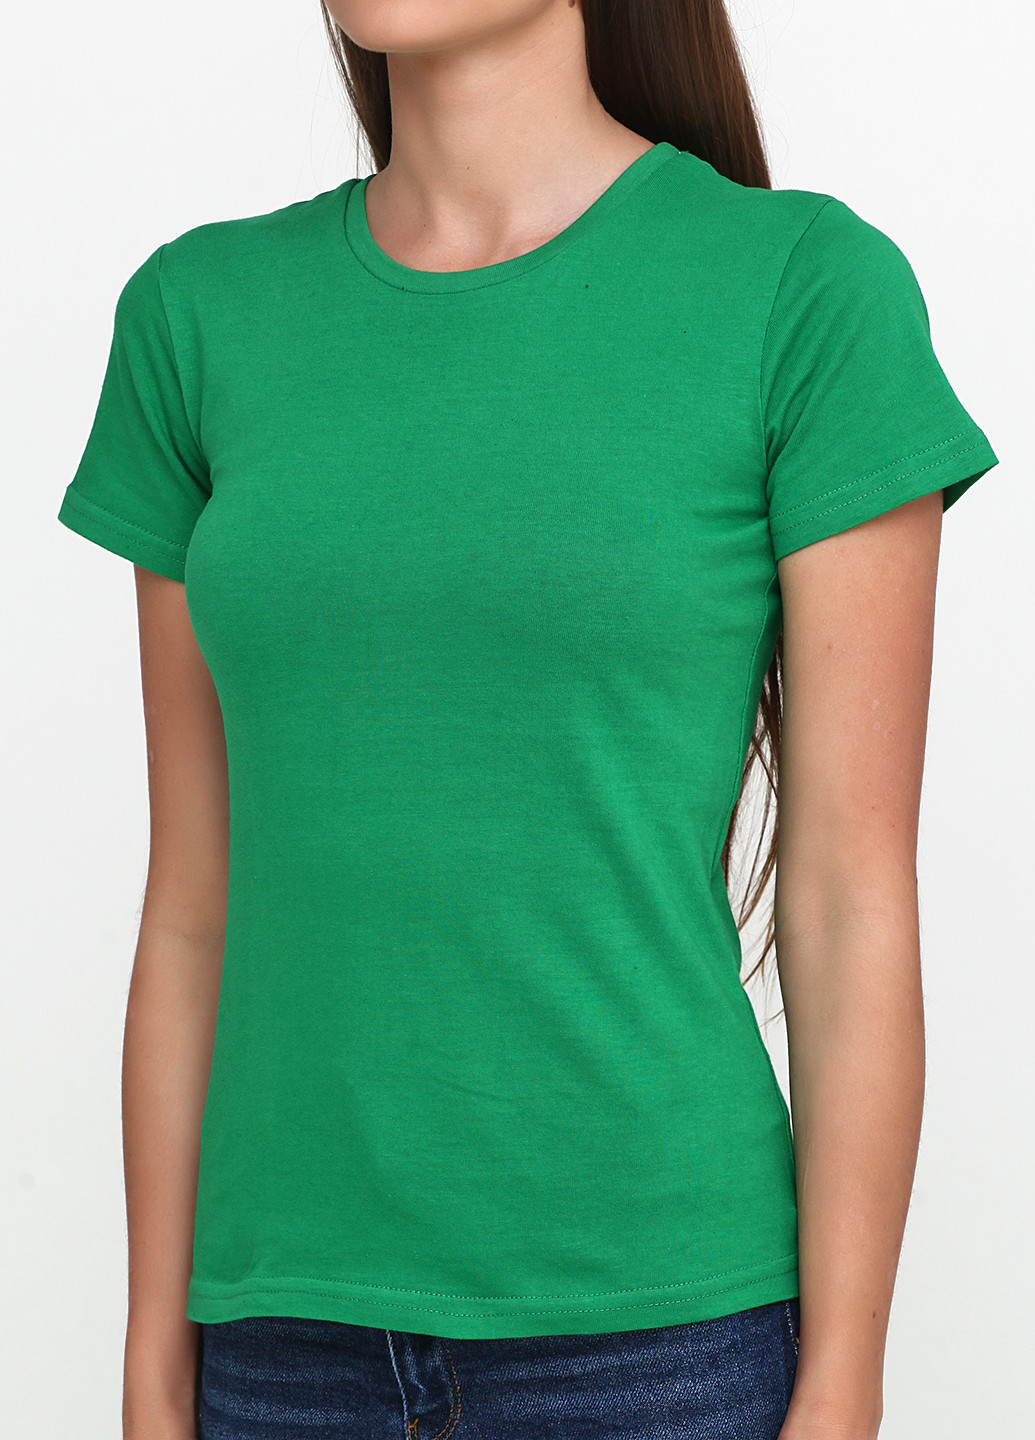 Зеленая всесезон футболка женская 18ж425-17 жовта с коротким рукавом Malta